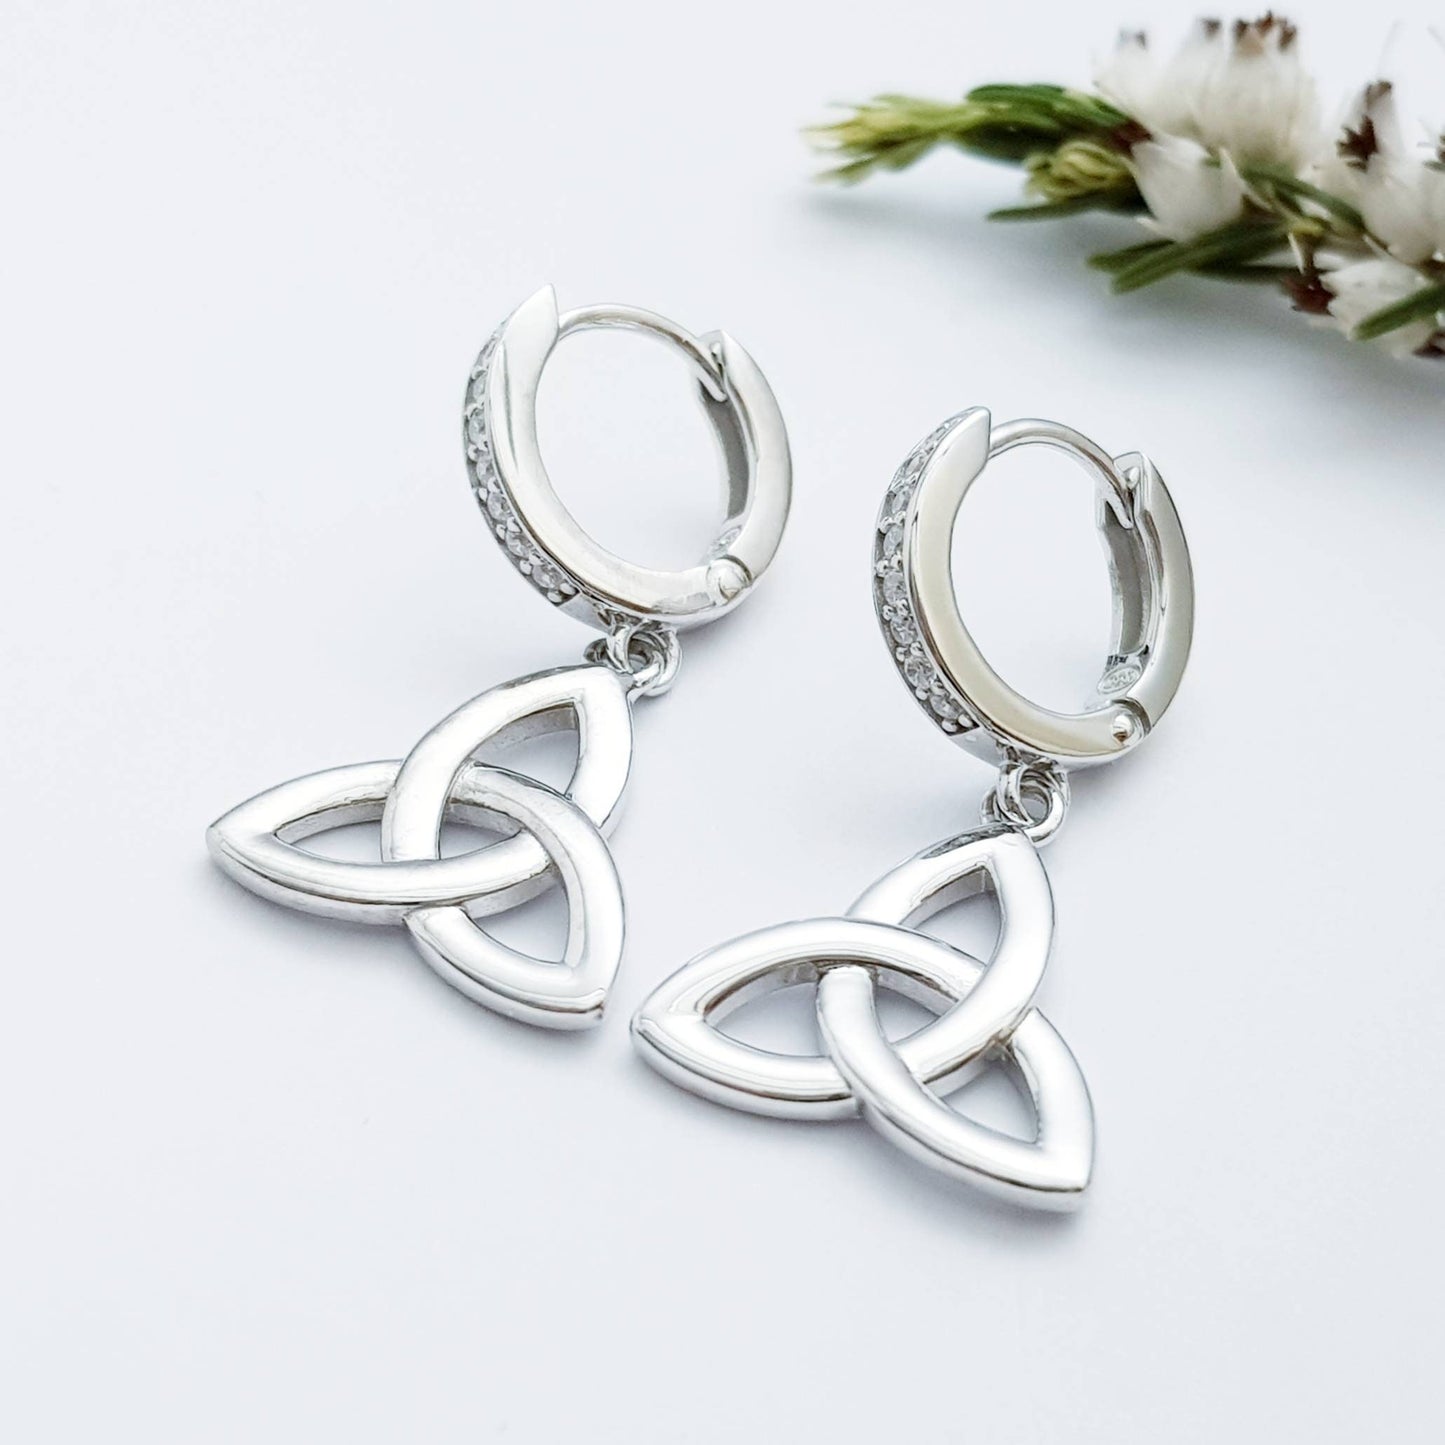 Celtic huggie Earrings, trinity knot drop earrings, silver Celtic jewelry, triquetra earrings, celtic dangle earrings